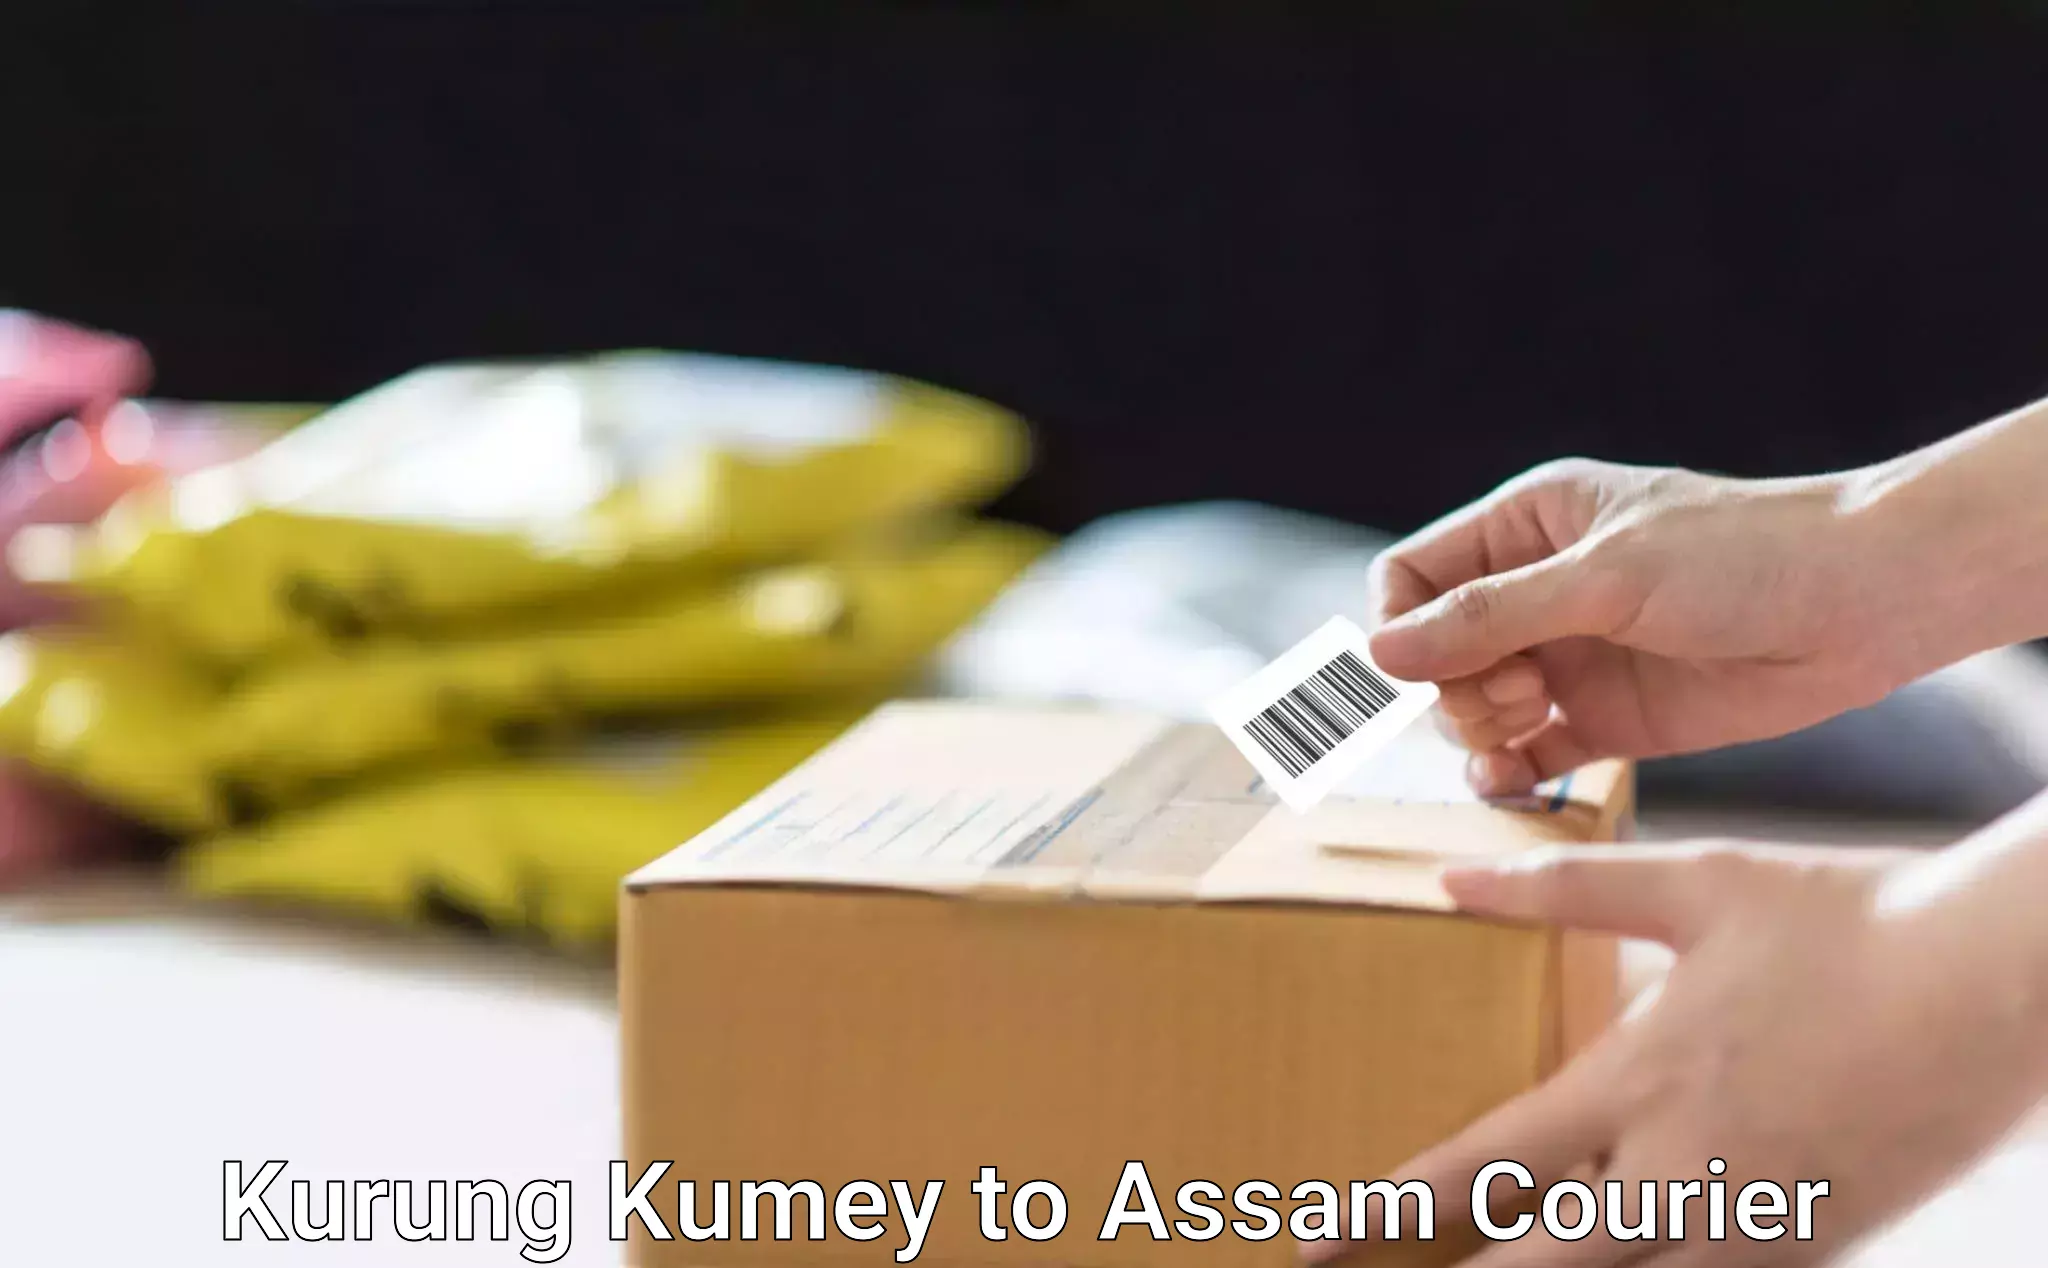 Weekend courier service Kurung Kumey to Assam